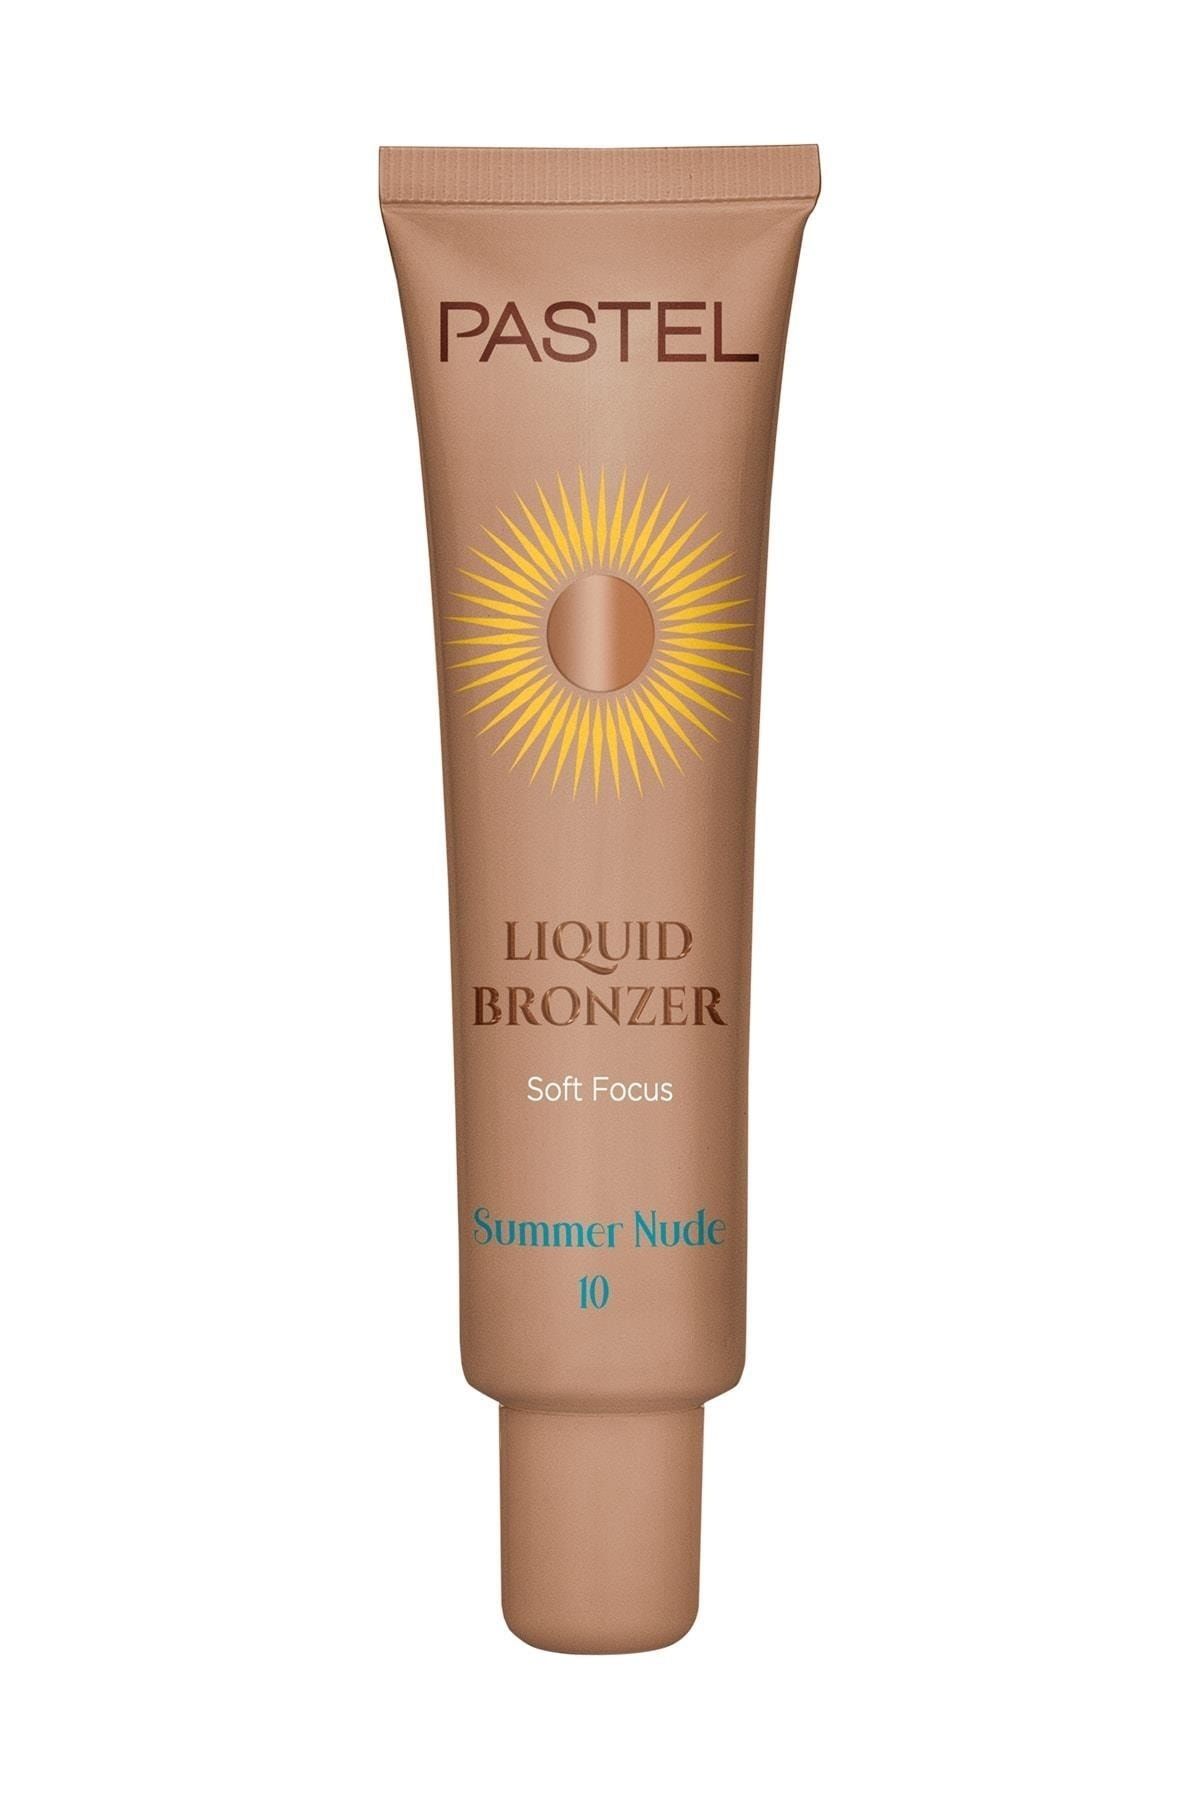 Pastel Profashion Liquid Bronzer Summer Nude No: 10